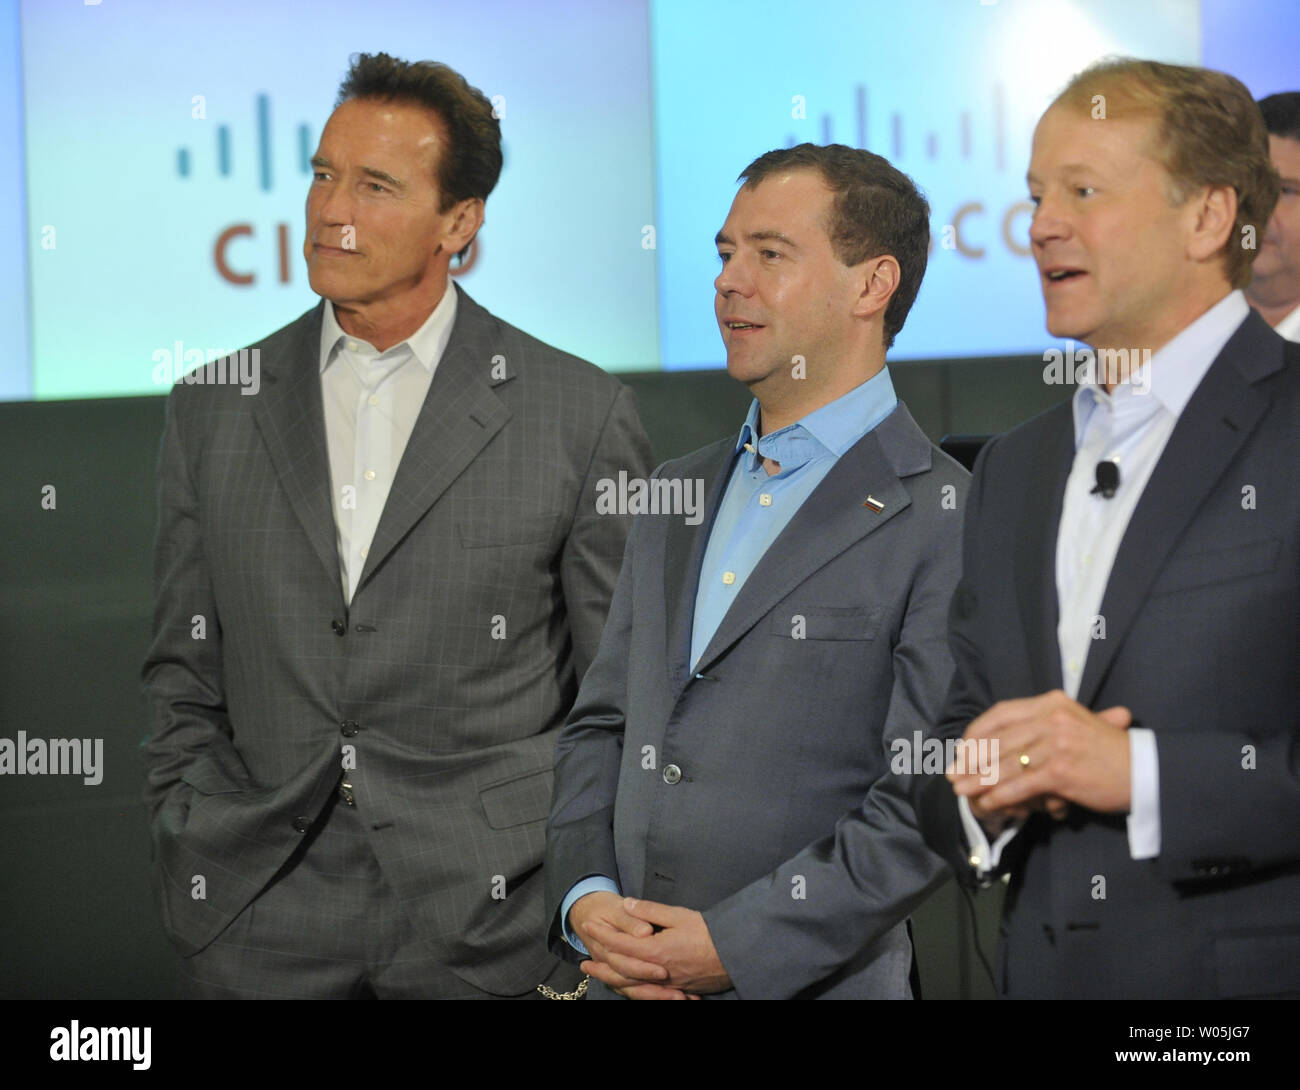 Der russische Präsident Dmitri Medwedew (C) und Kalifornien reg. Arnold Schwarzenegger (L) stehen mit Cisco-CEO John Chambers (R) wie Sie Cisco Hauptsitz in San Jose, CA am 23. Juni 2010 Während seines zweitägigen Besuchs in Silicon Valley zu besuchen. UPI Foto/Alex Volgin Stockfoto